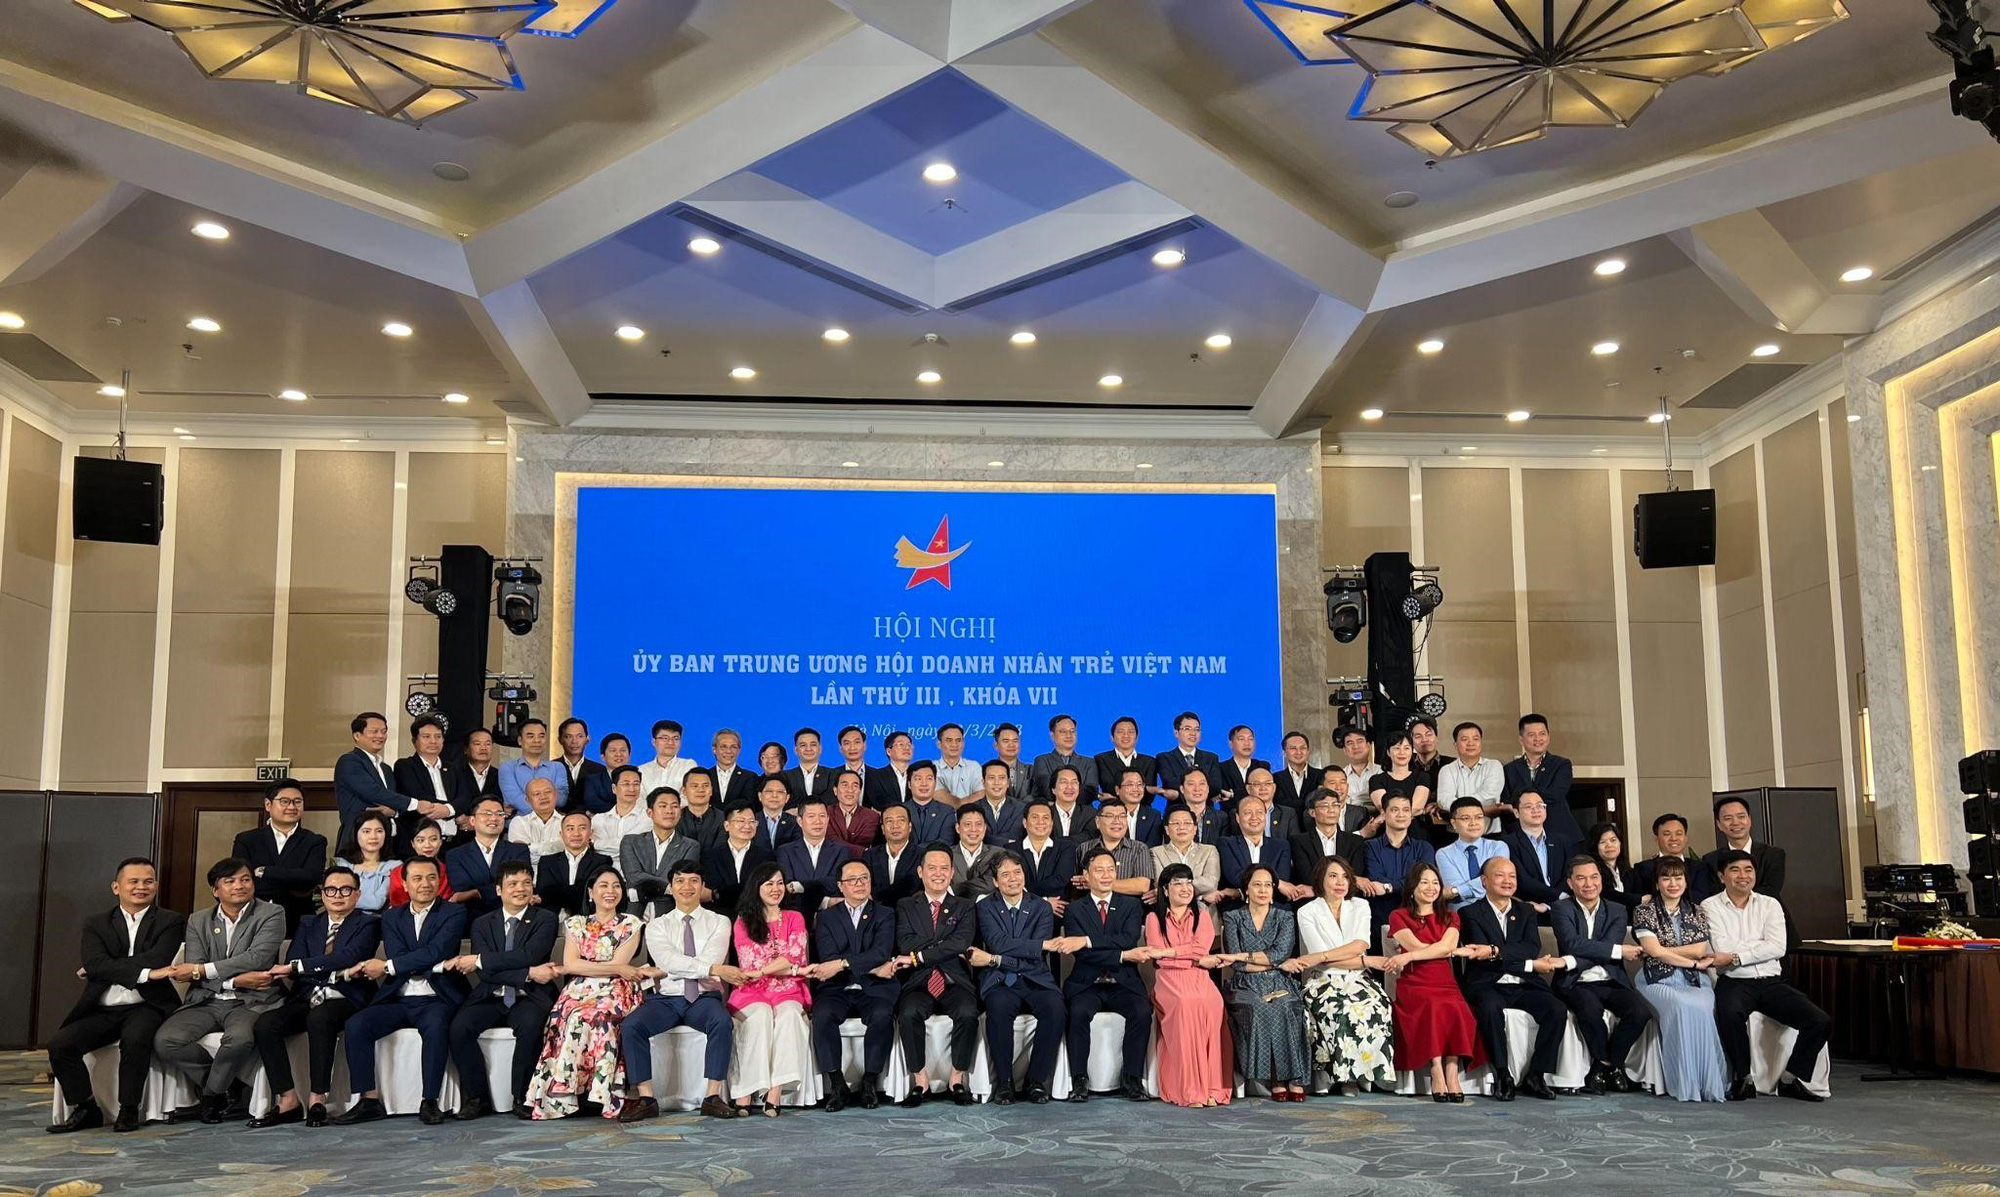 Hội Doanh nhân trẻ Việt Nam tổ chức Hội nghị Ủy ban Trung ương Hội Doanh nhân trẻ Việt Nam lần thứ III, khóa VII